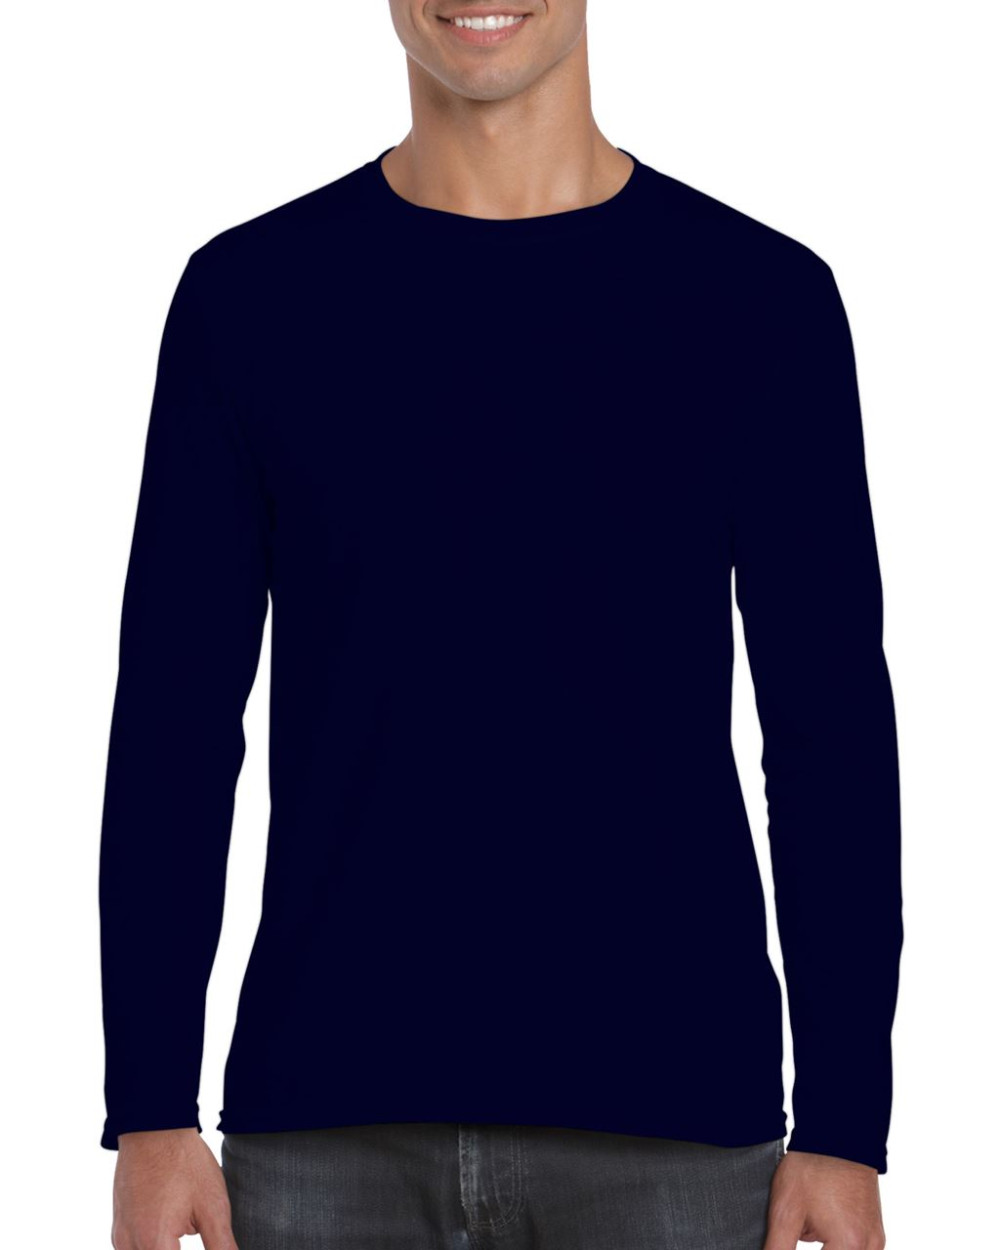 Gildan Softstyle pamut uniszex környakas hosszú ujjú póló - sötétkék